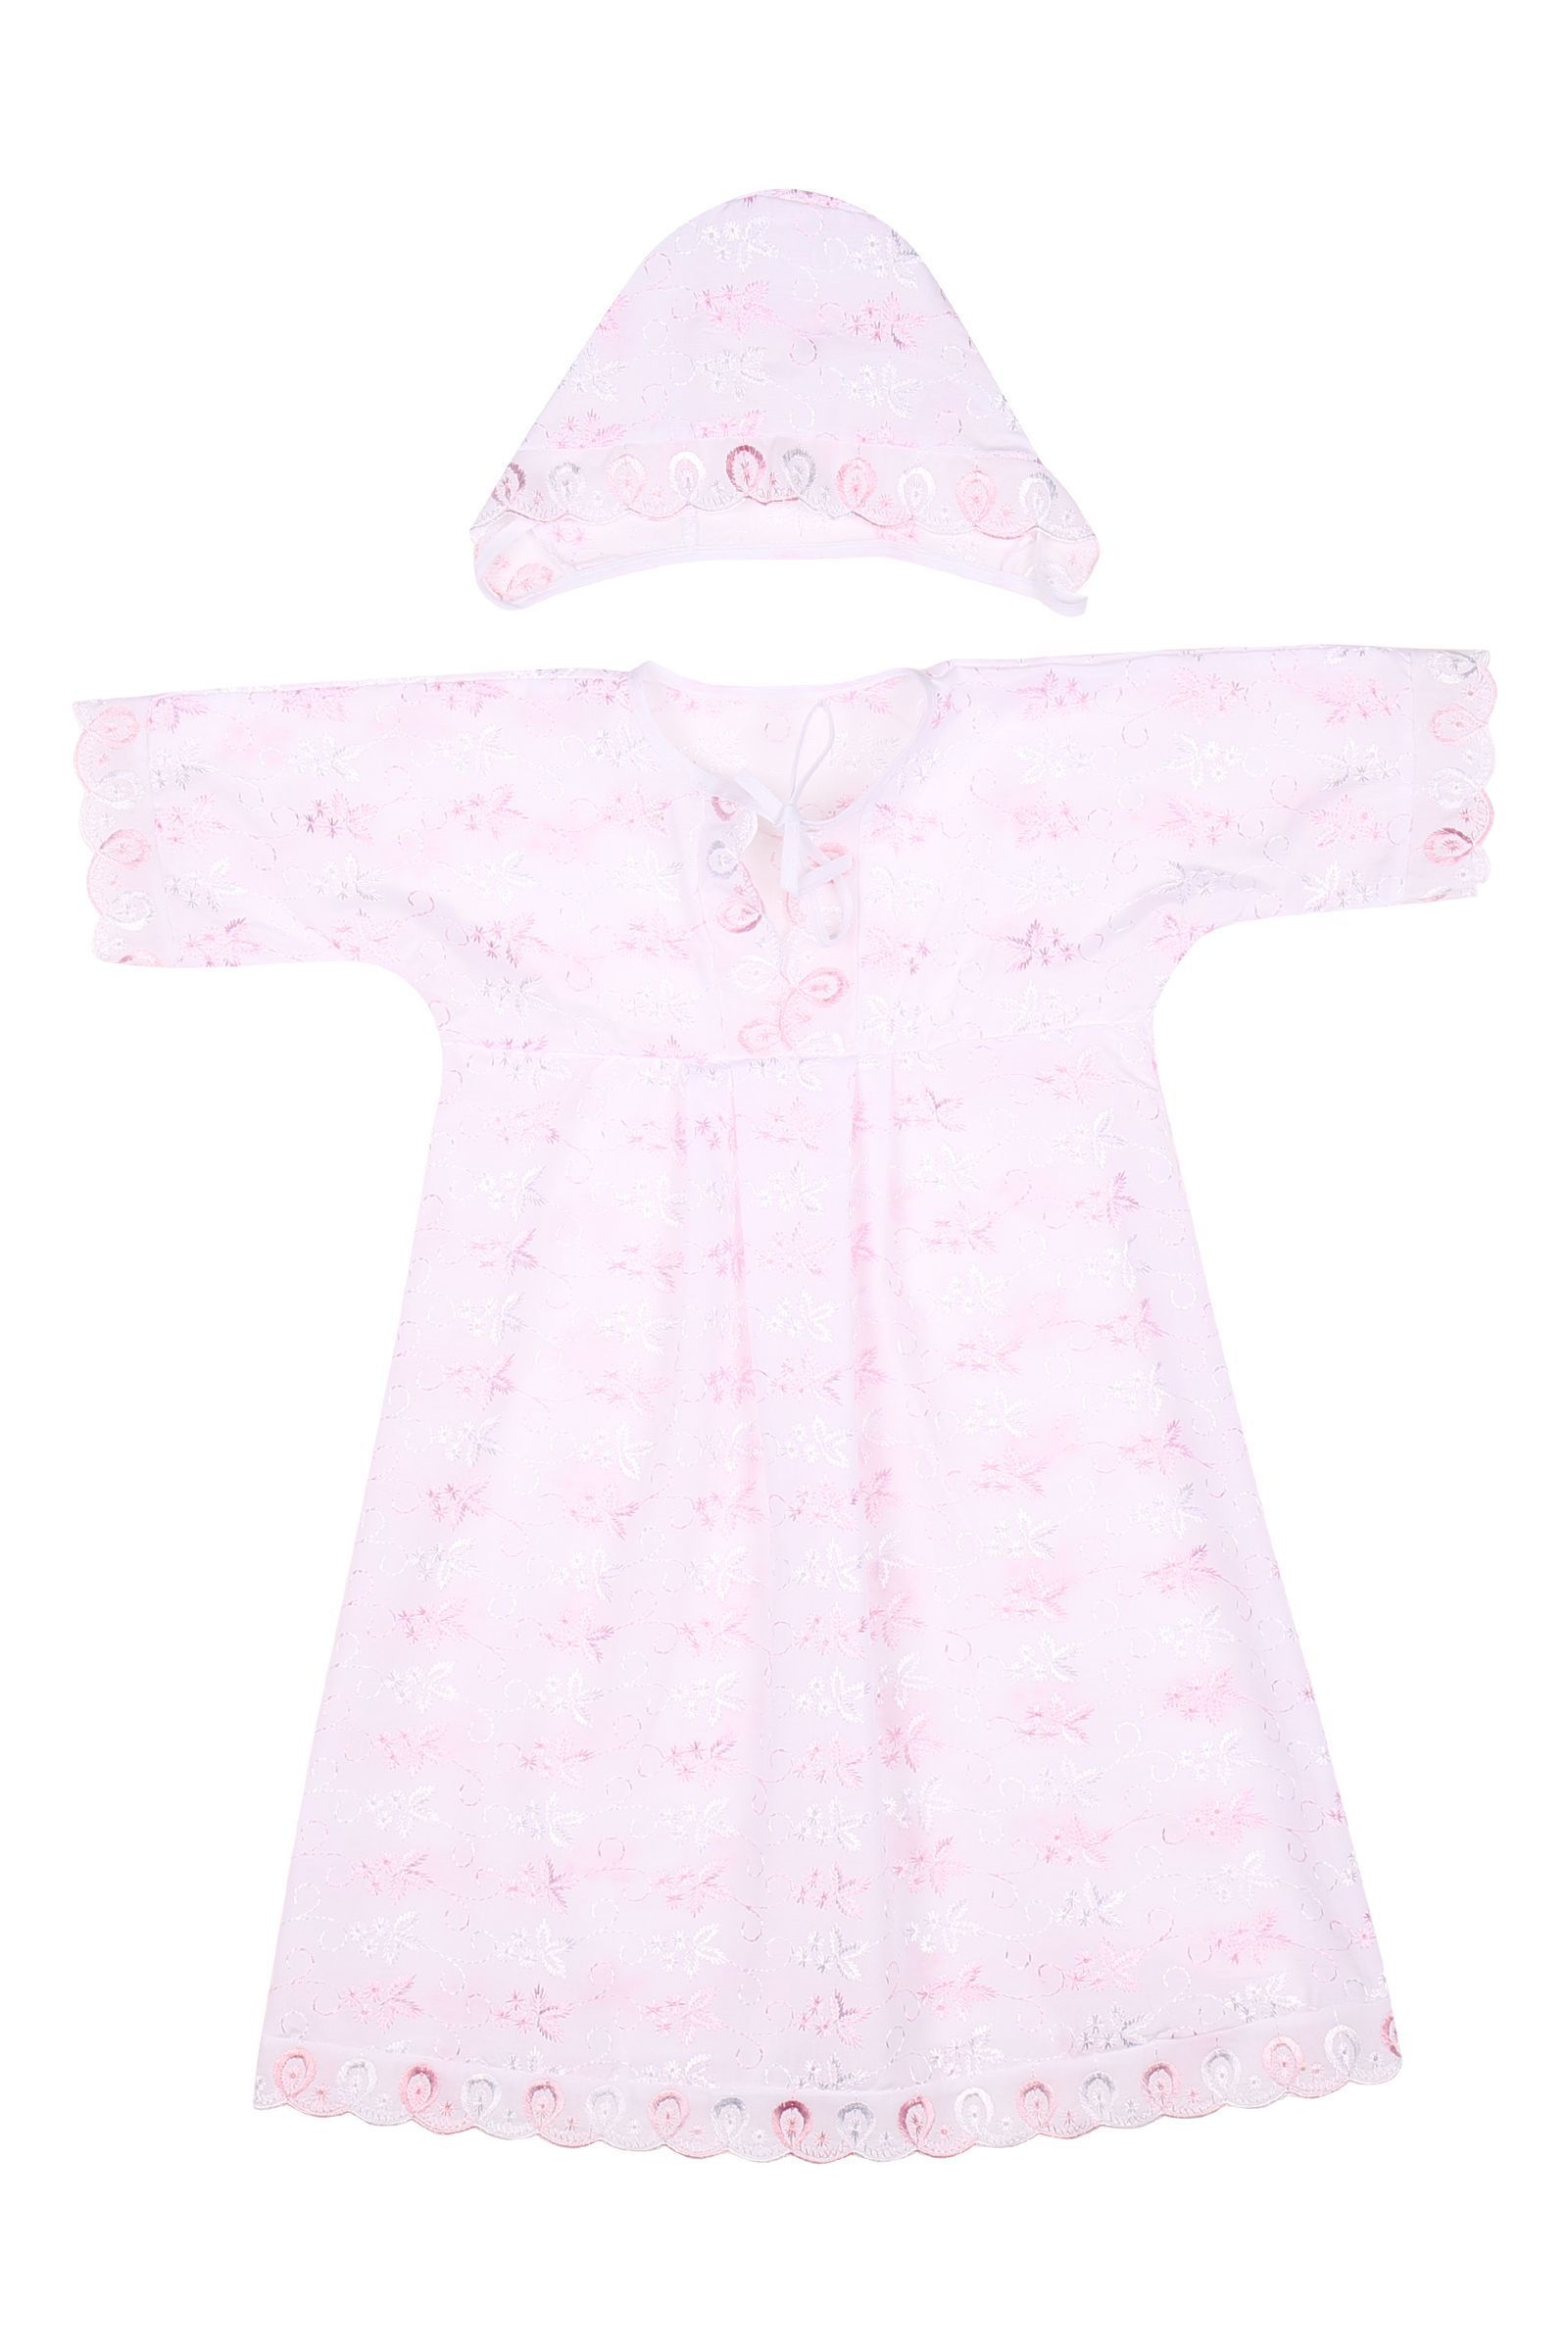 Комплект для крещения-КК14-3305 оптом от производителя детской одежды 'Алёна'